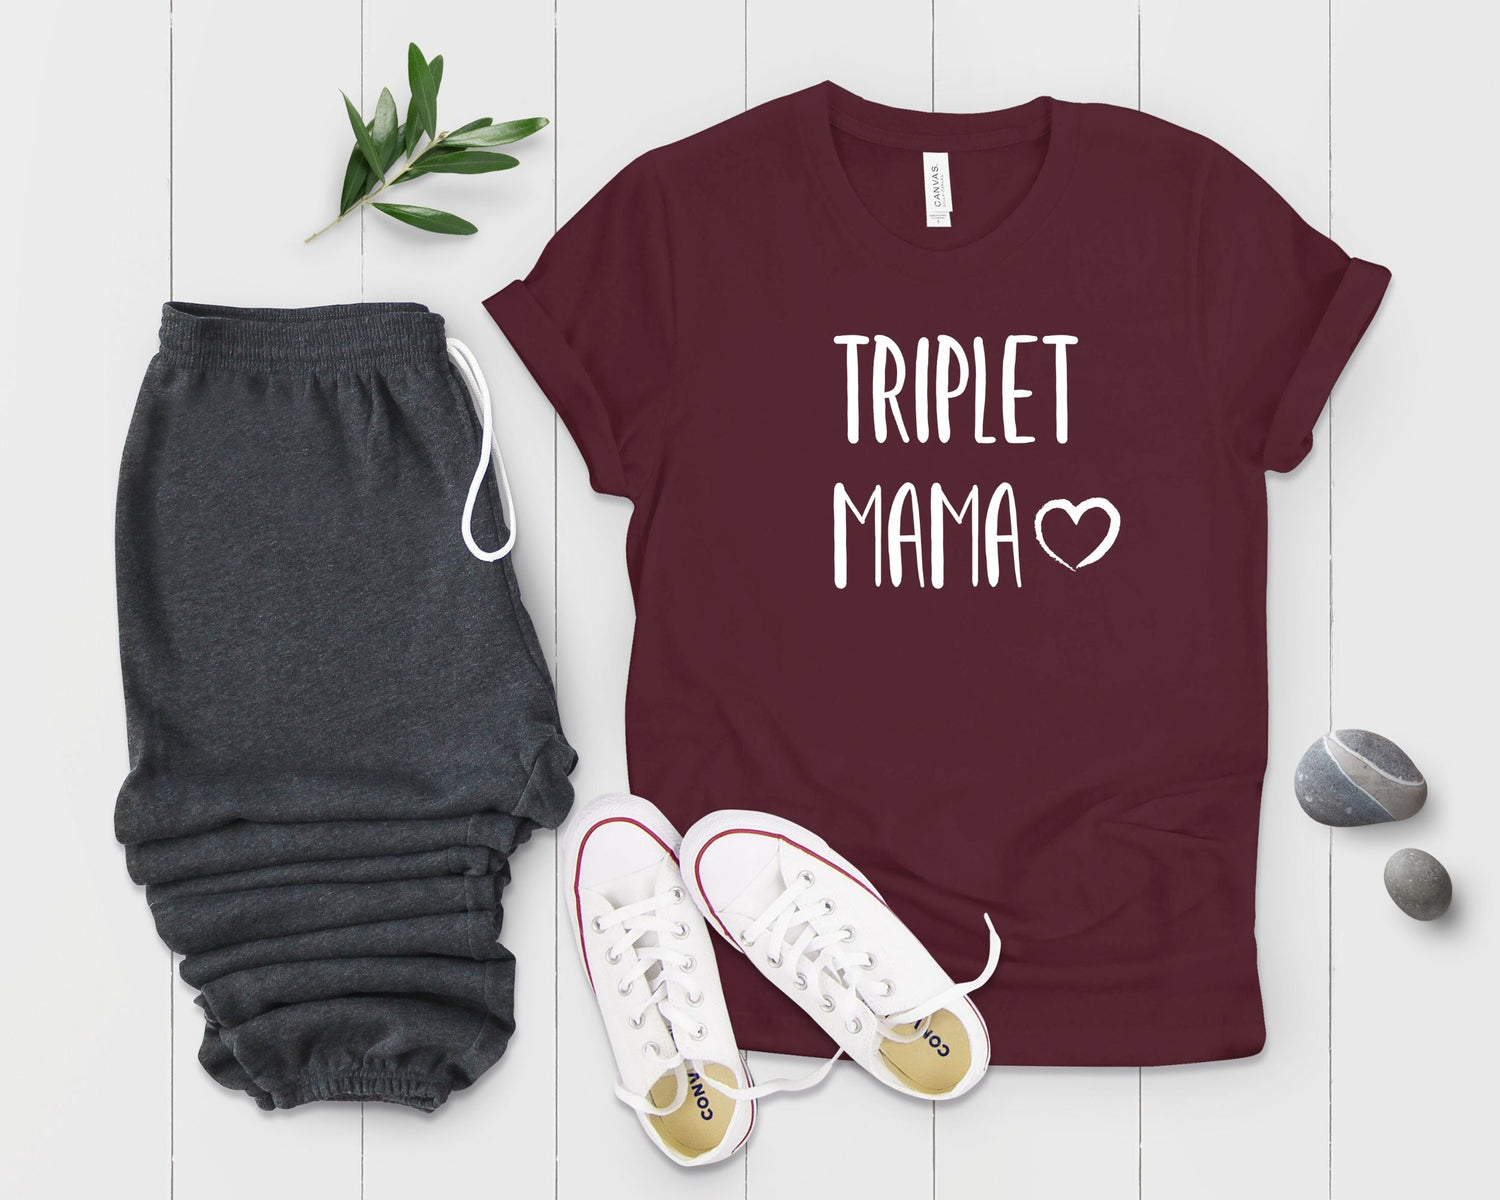 Triplet Mama Pregnancy T Shirt - Teegarb